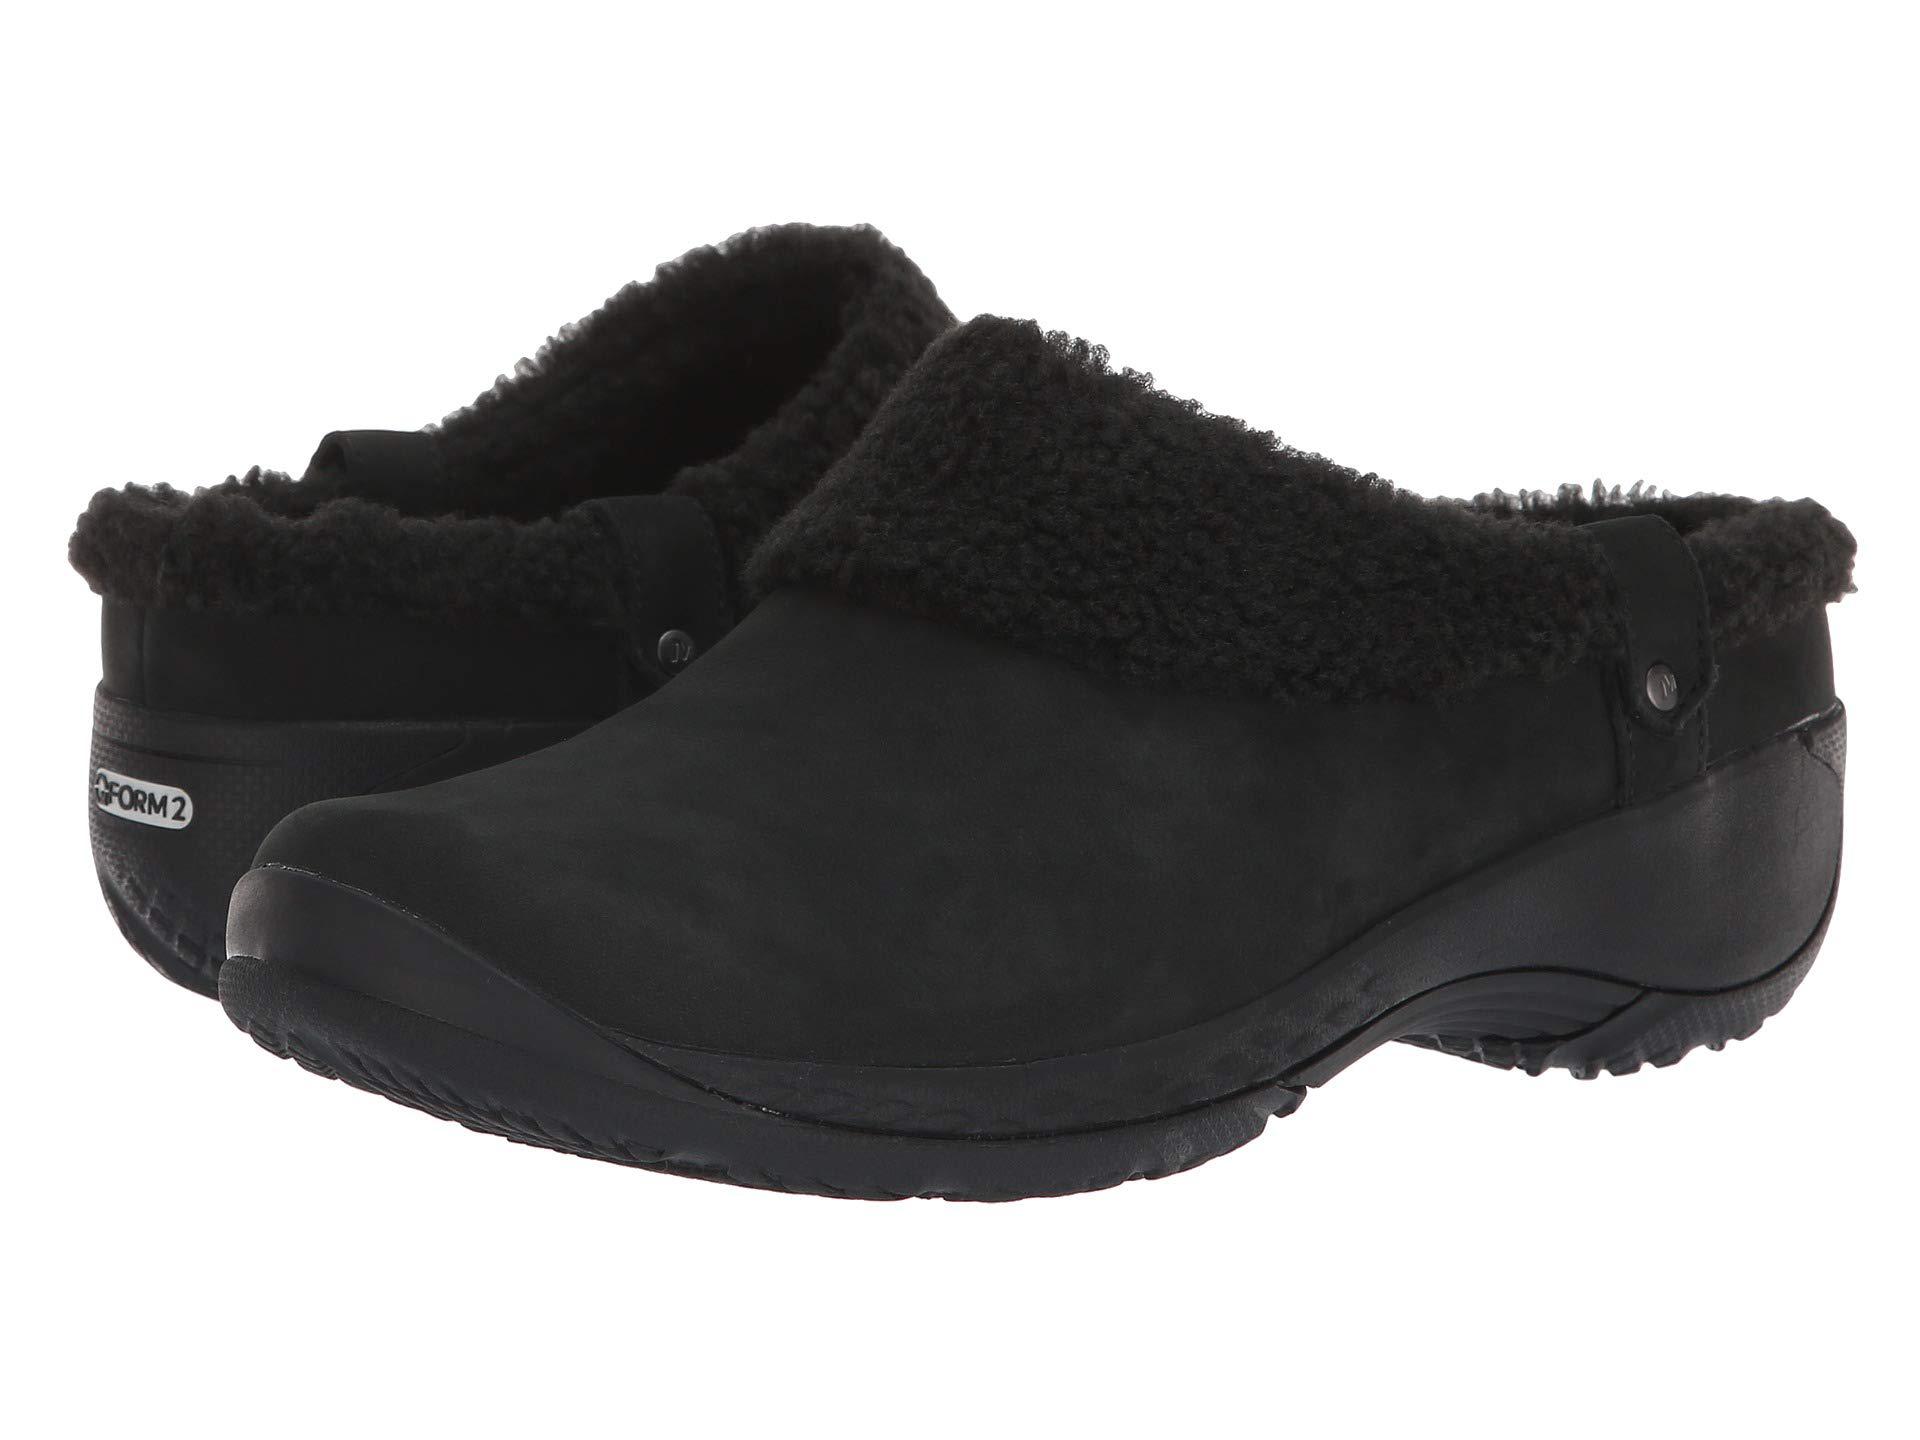 Lyst - Merrell Encore Ice Slide Q2 (black) Women's Slip On Shoes in Black